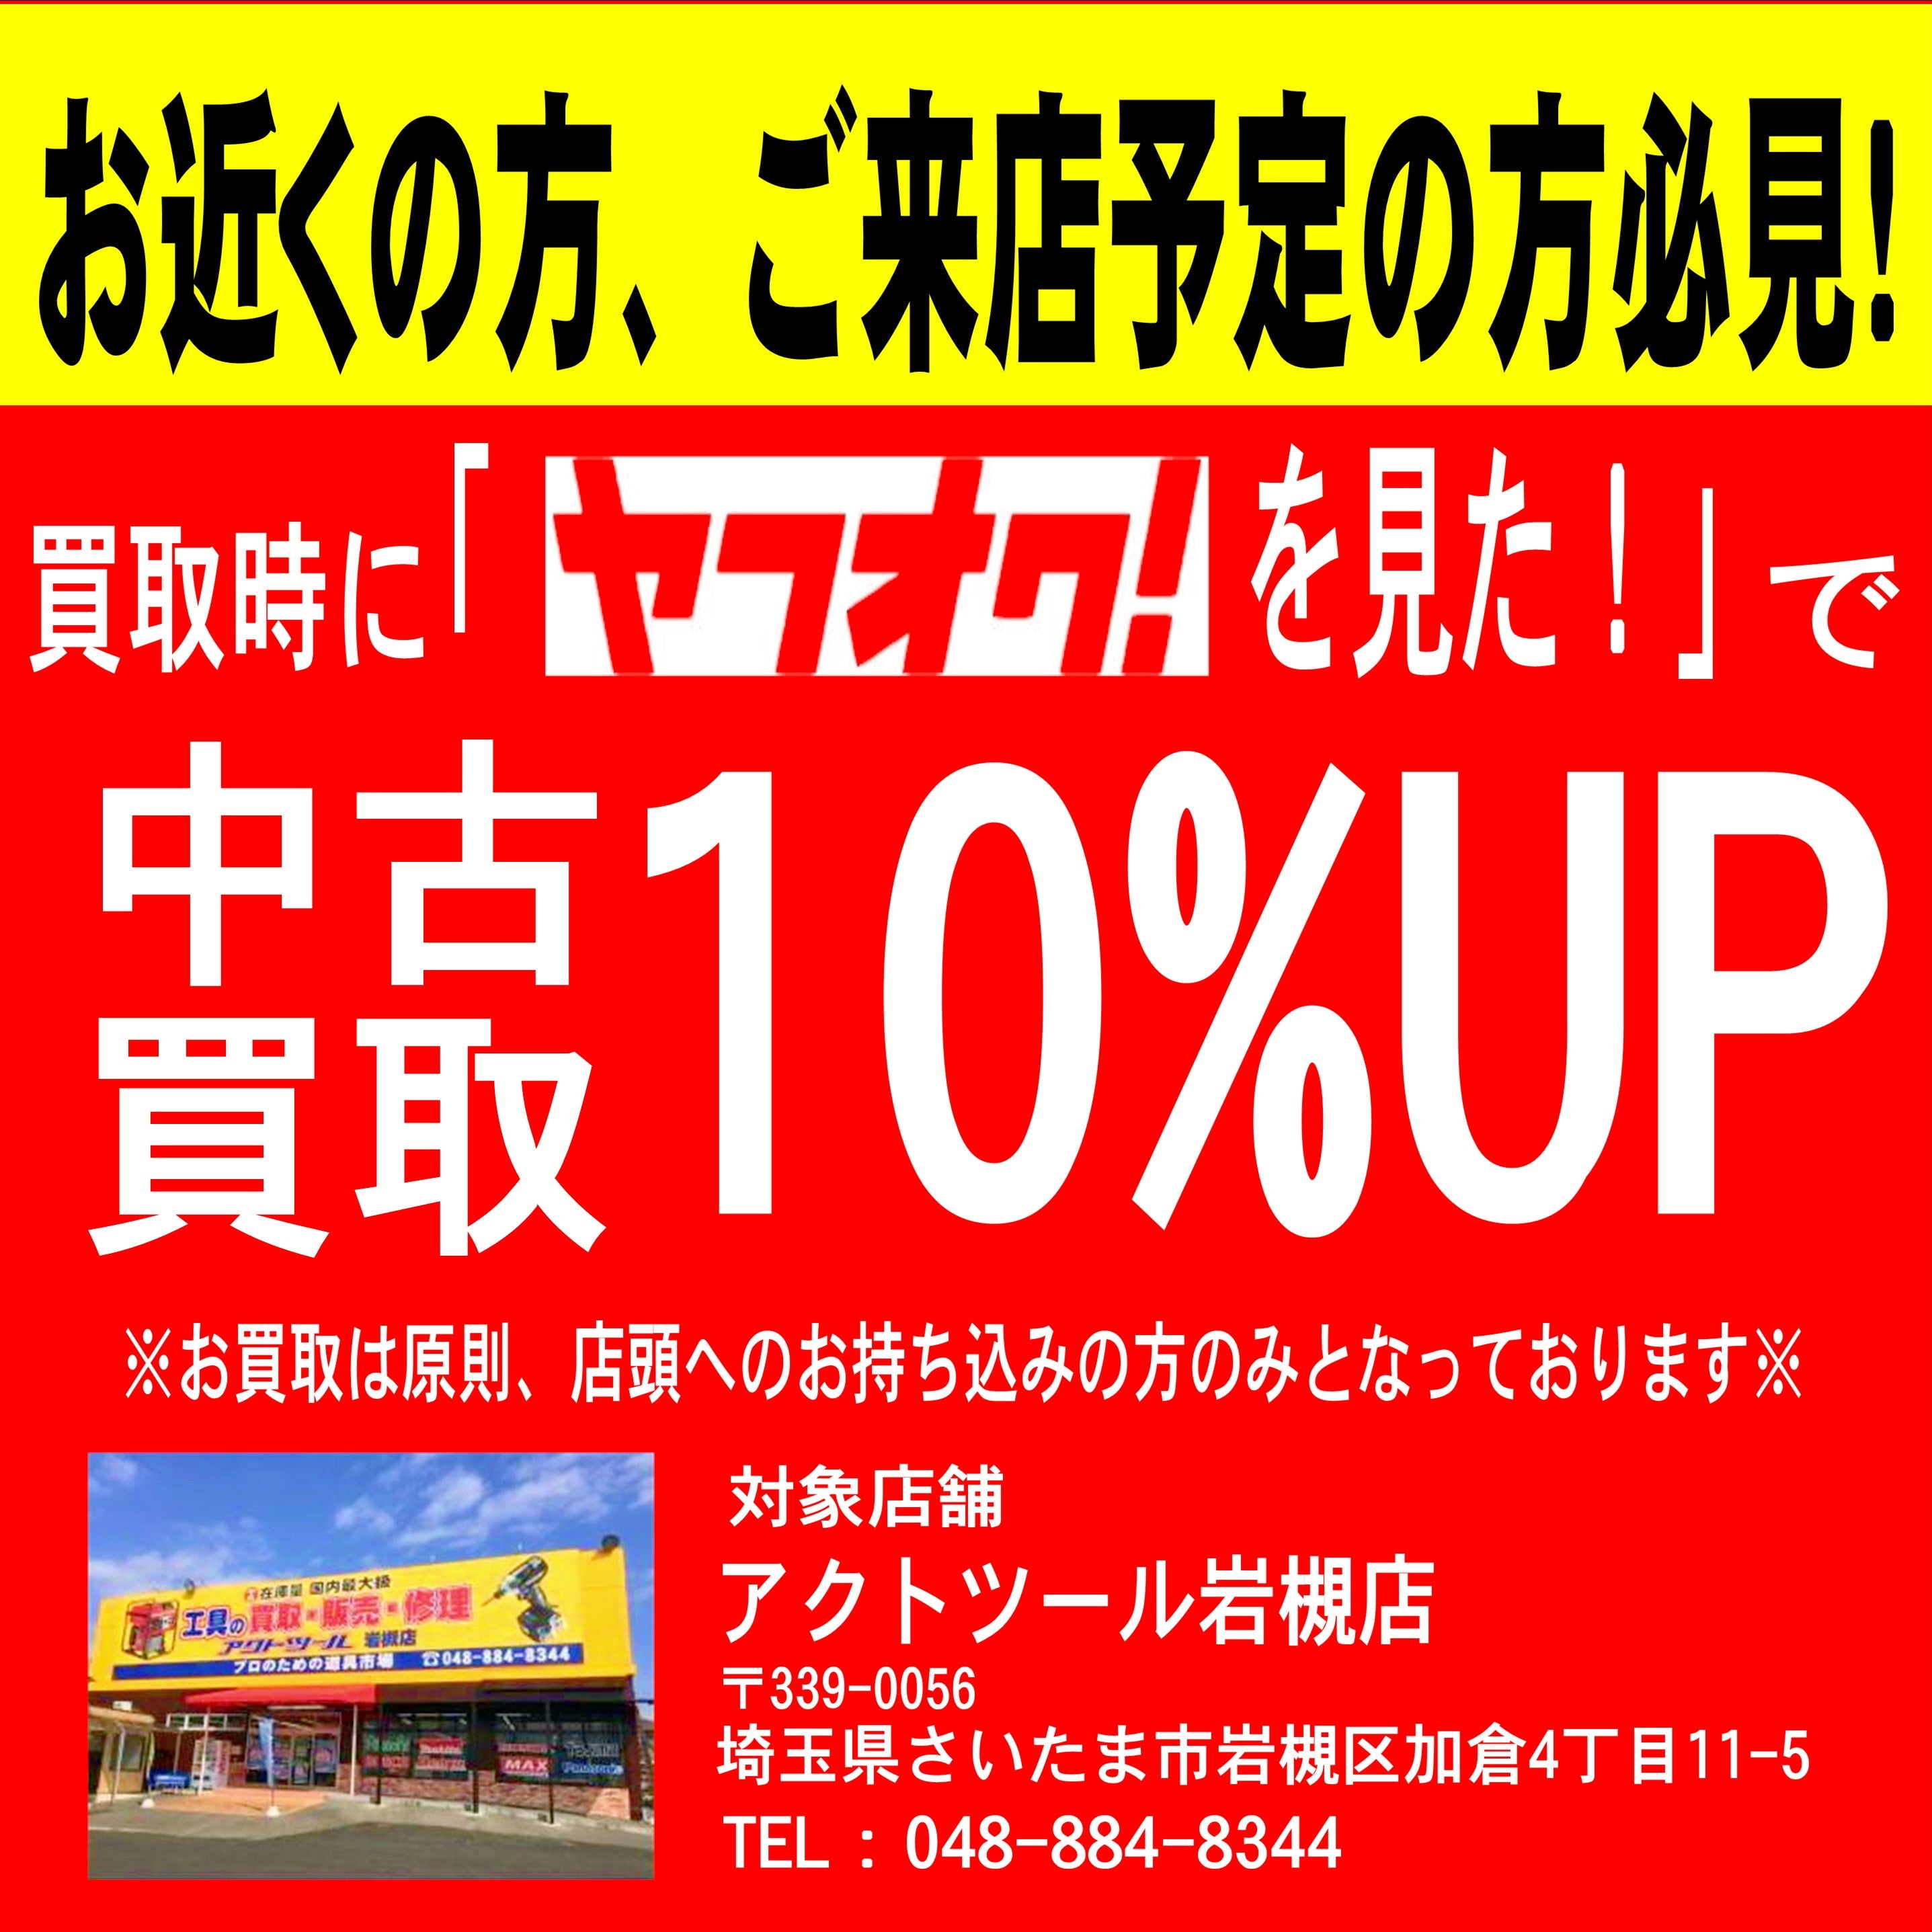 ヨコタ ニードルスケーラー YC-20【岩槻店】 アクトツールオンラインショップ